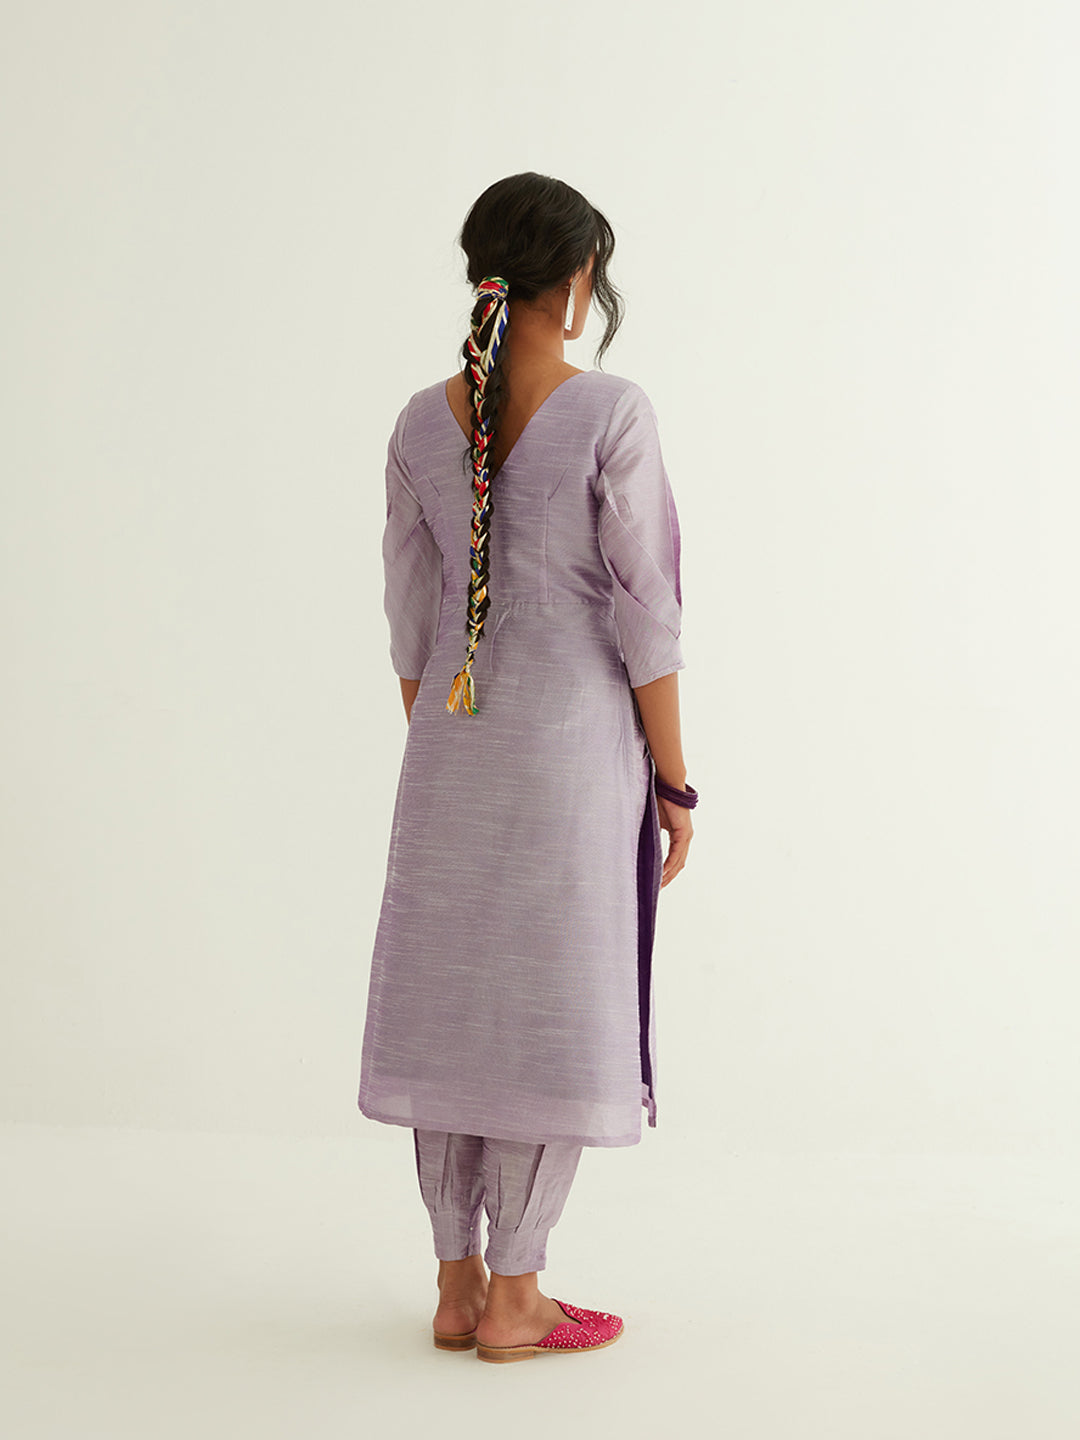 Straight banarasi kurta with pleated sleeves